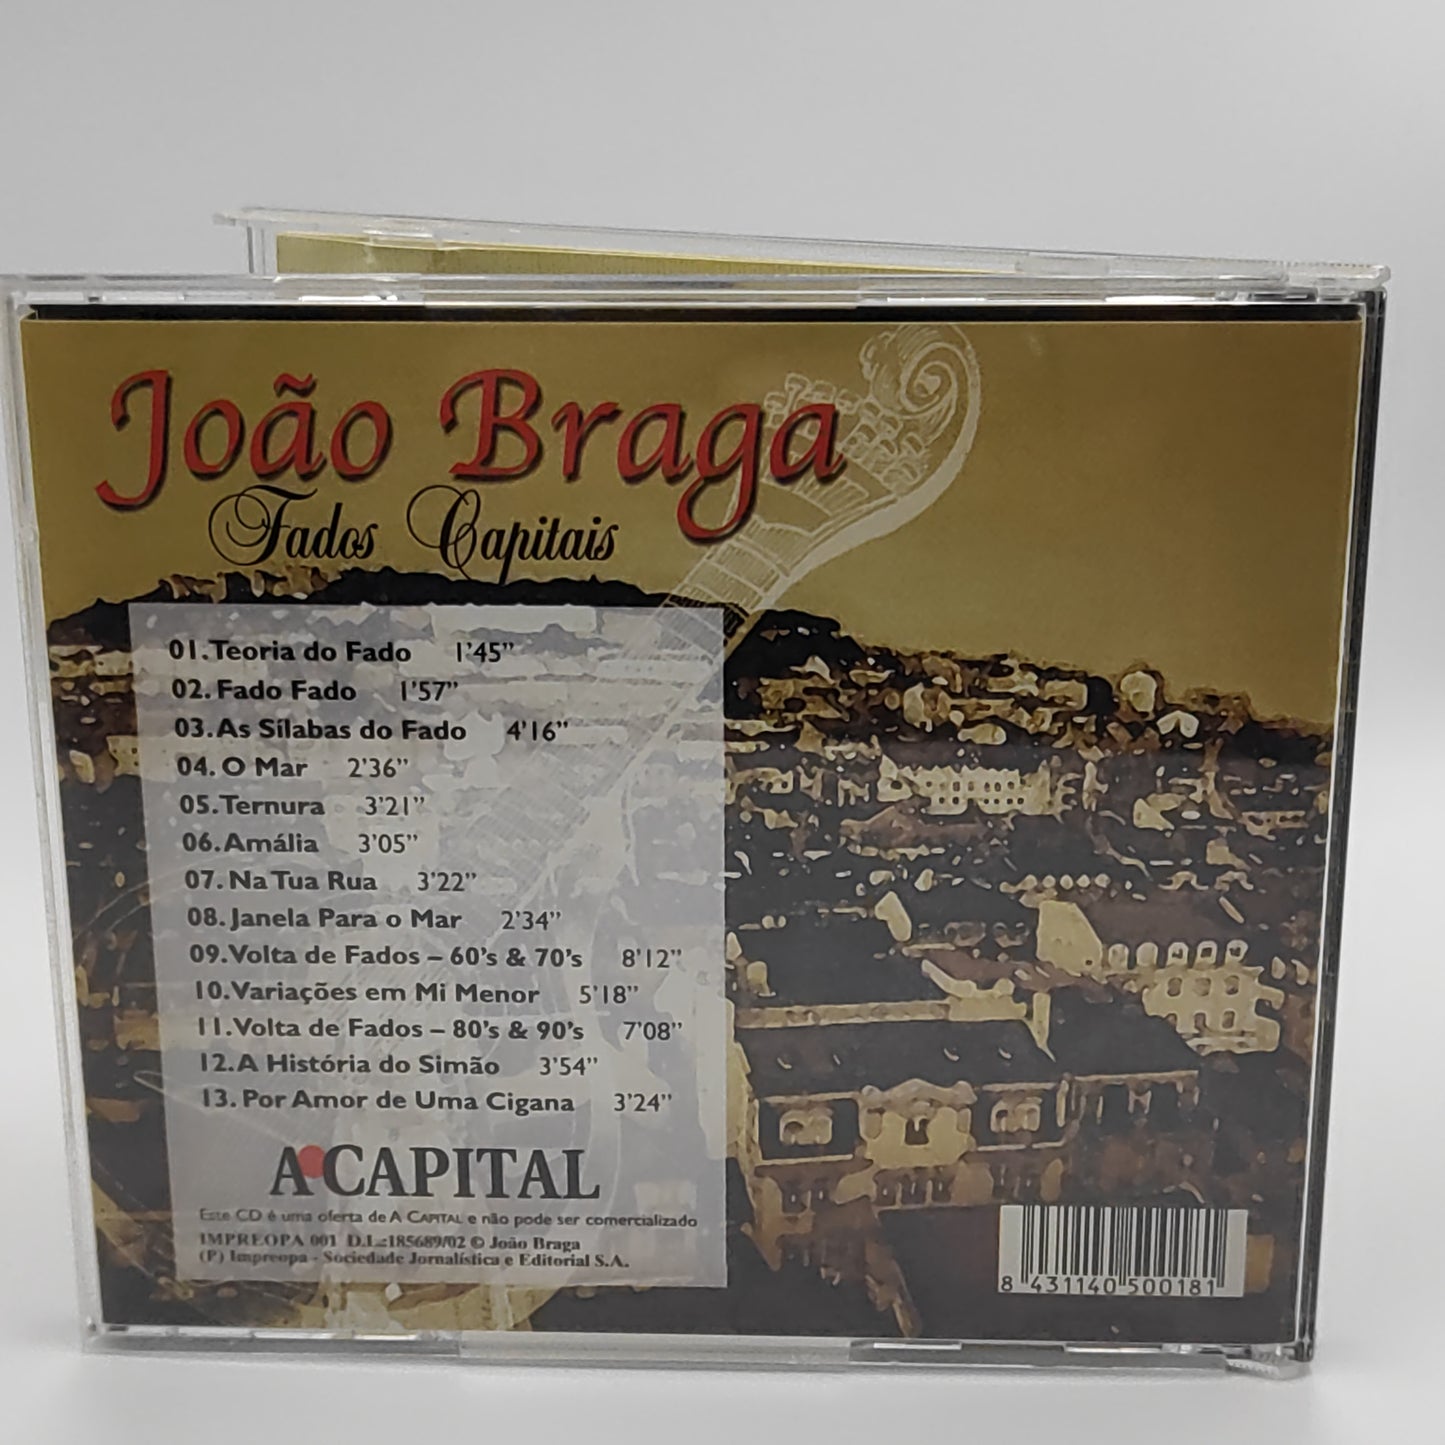 João Braga – Fados Capitais